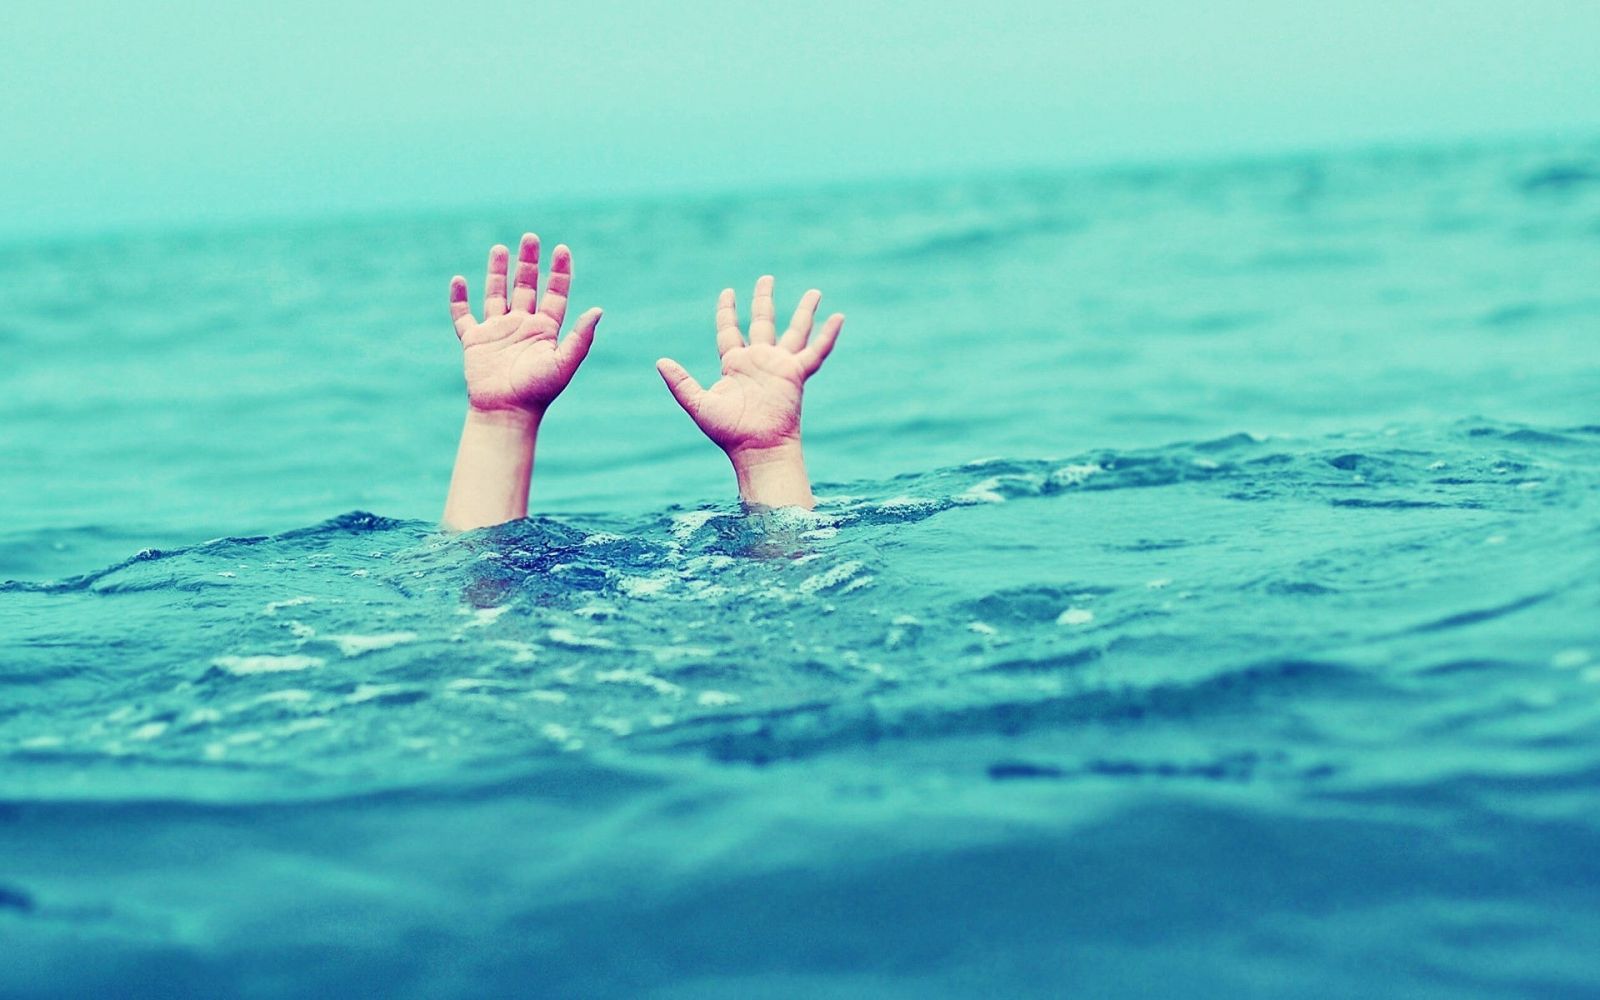 Việt Nam kỷ lục về trẻ đuối nước: Bộ bảo cần học bơi, phụ huynh... phản đối